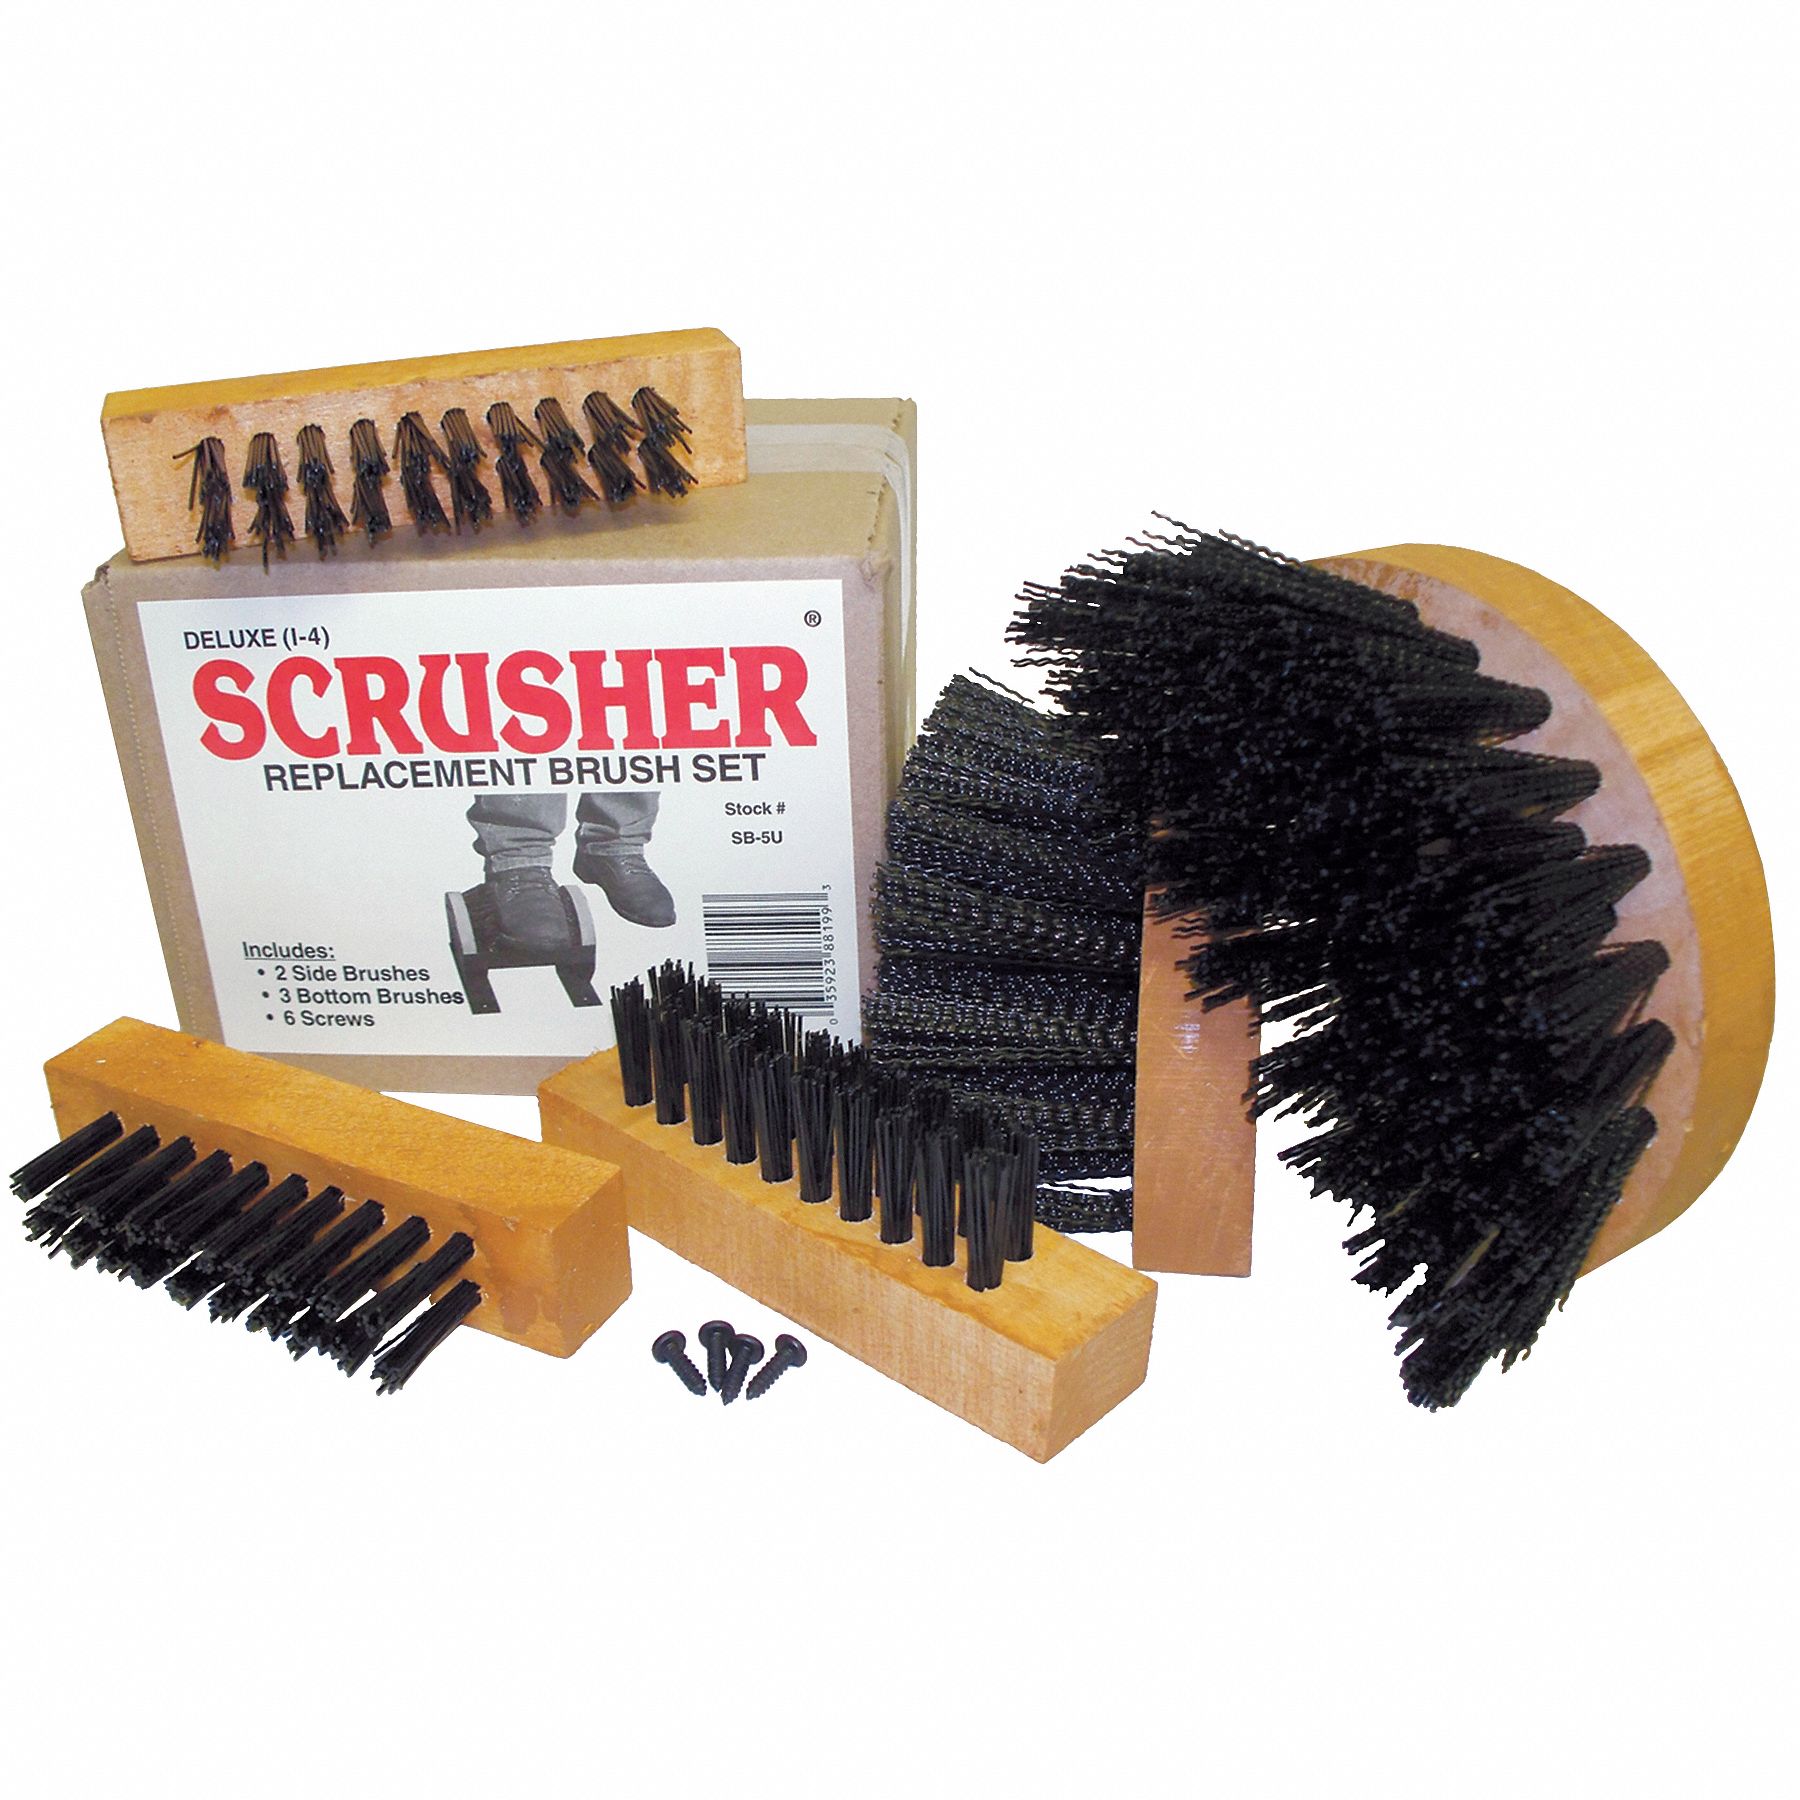 8DCJ9 - Brush Set for Standard Scrusher(r)